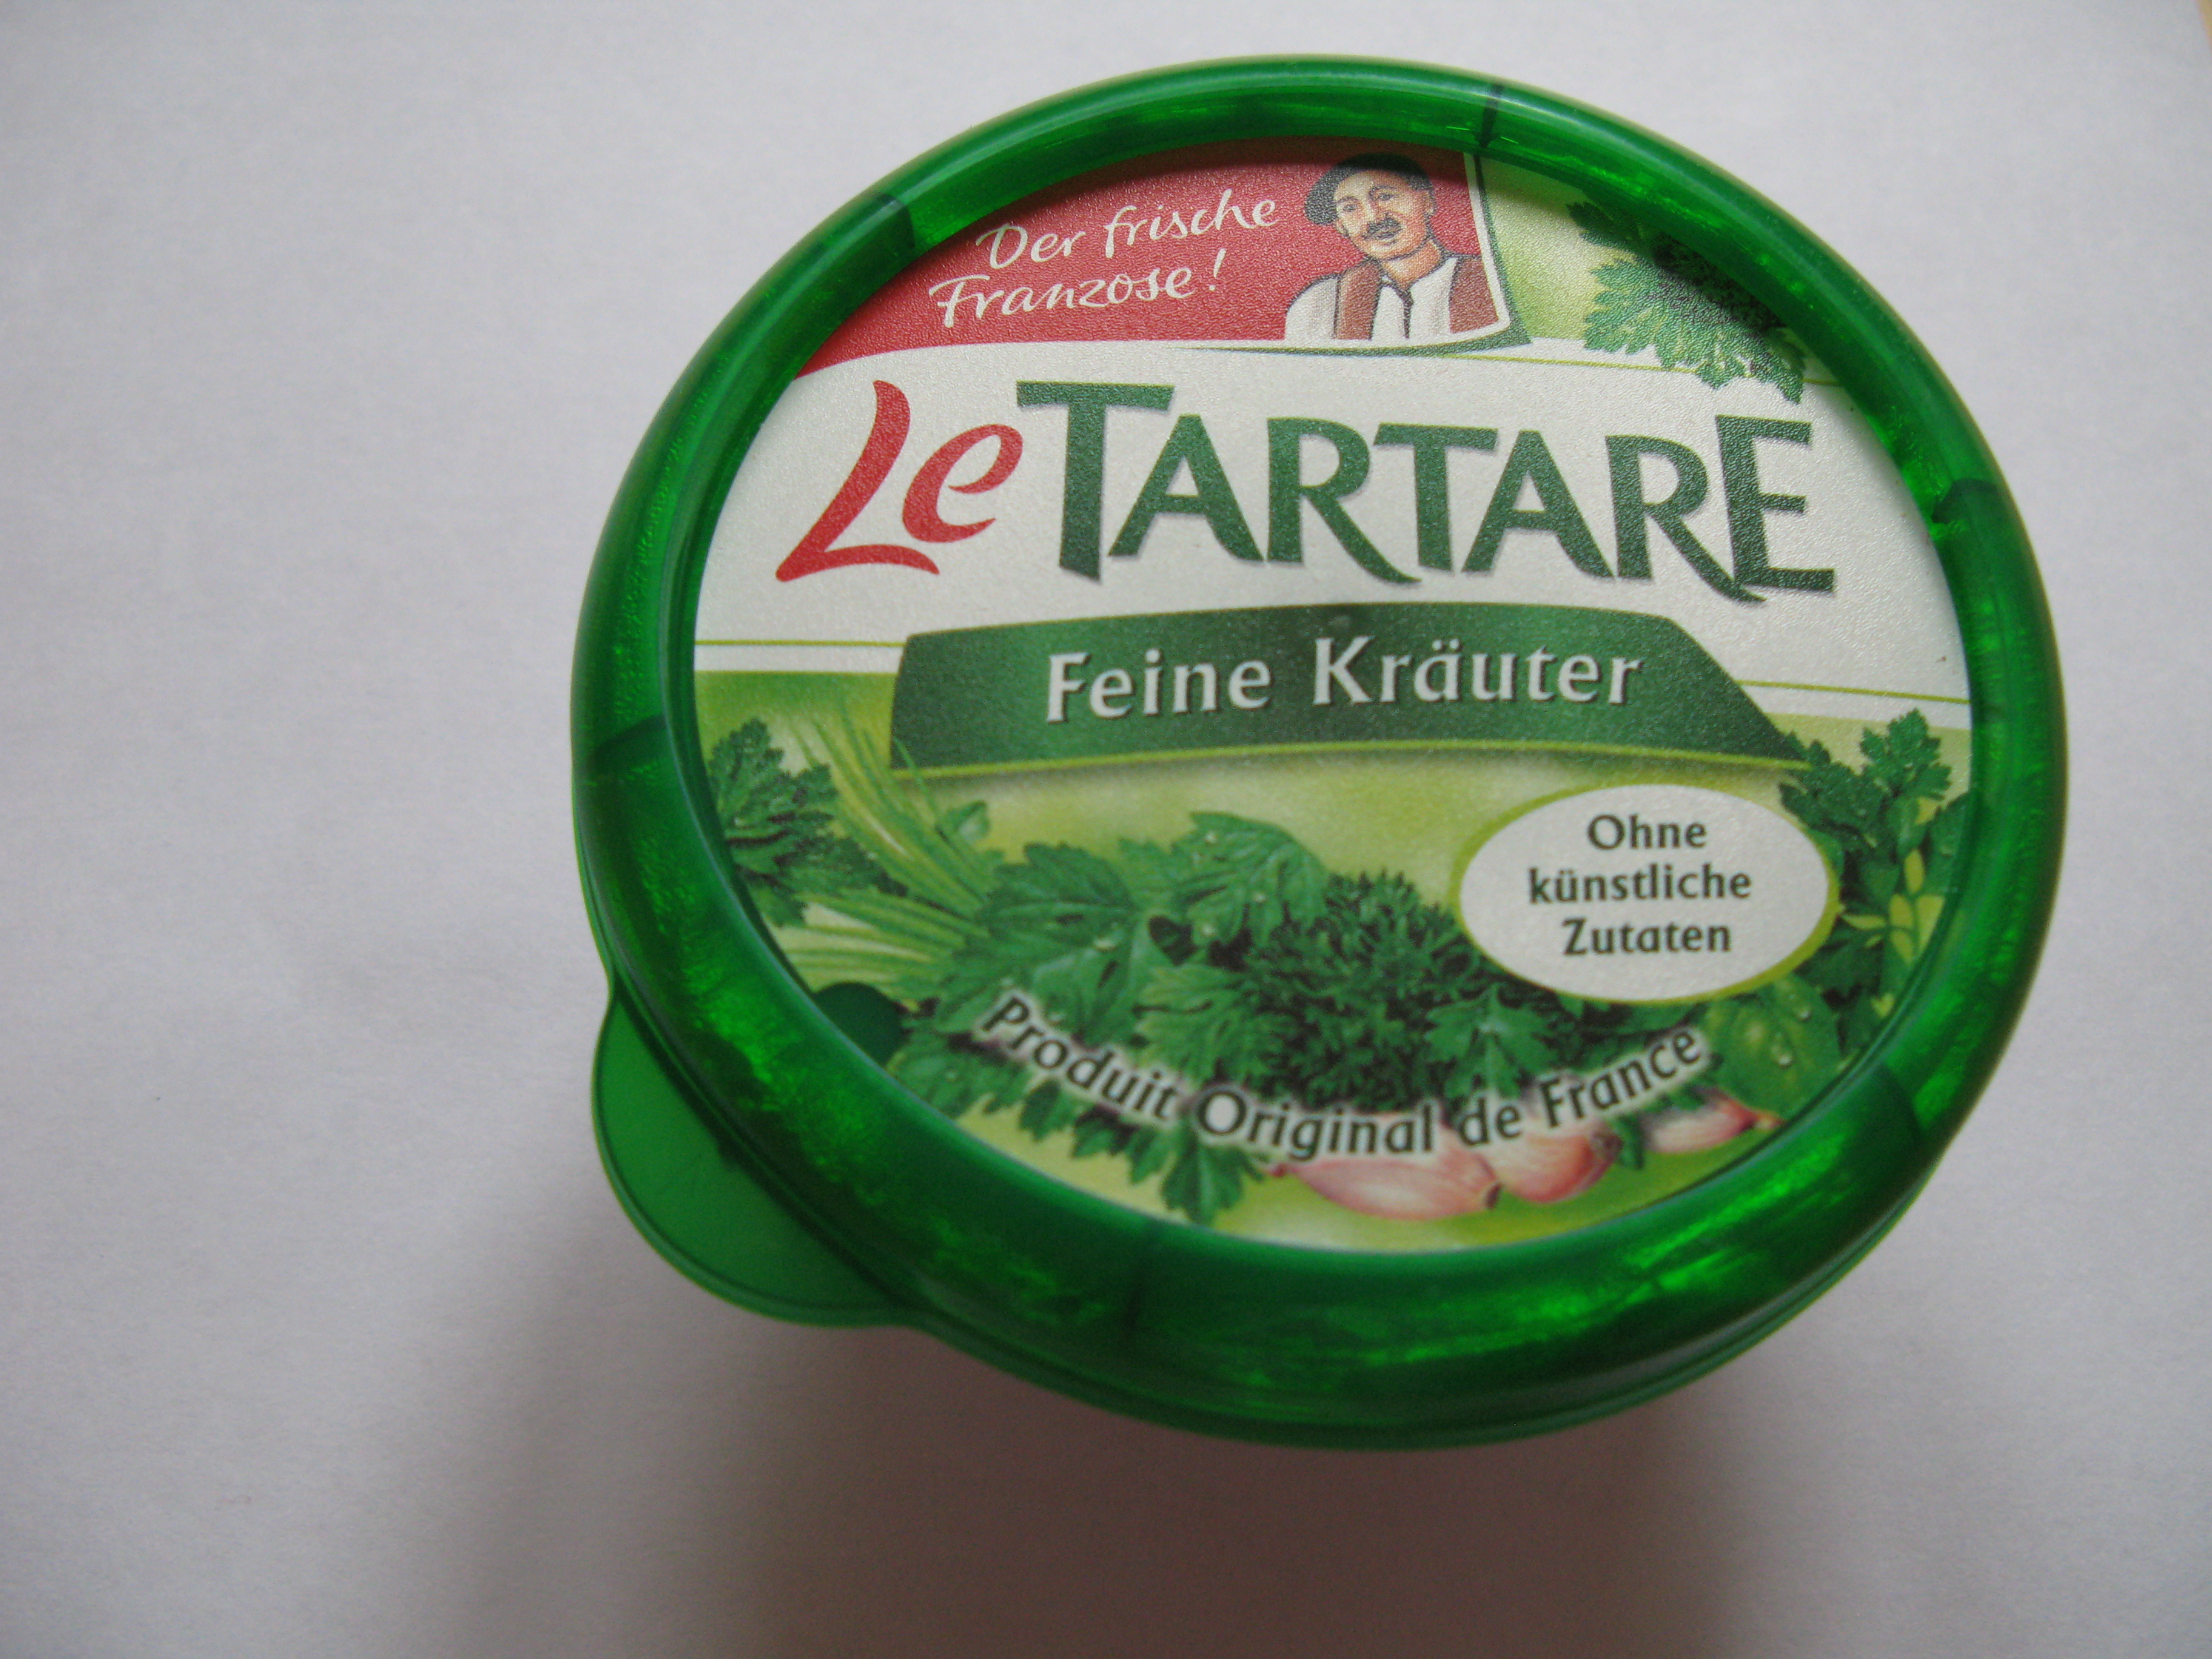 Vorschaubild für Datei:Le Tartare (2013).JPG